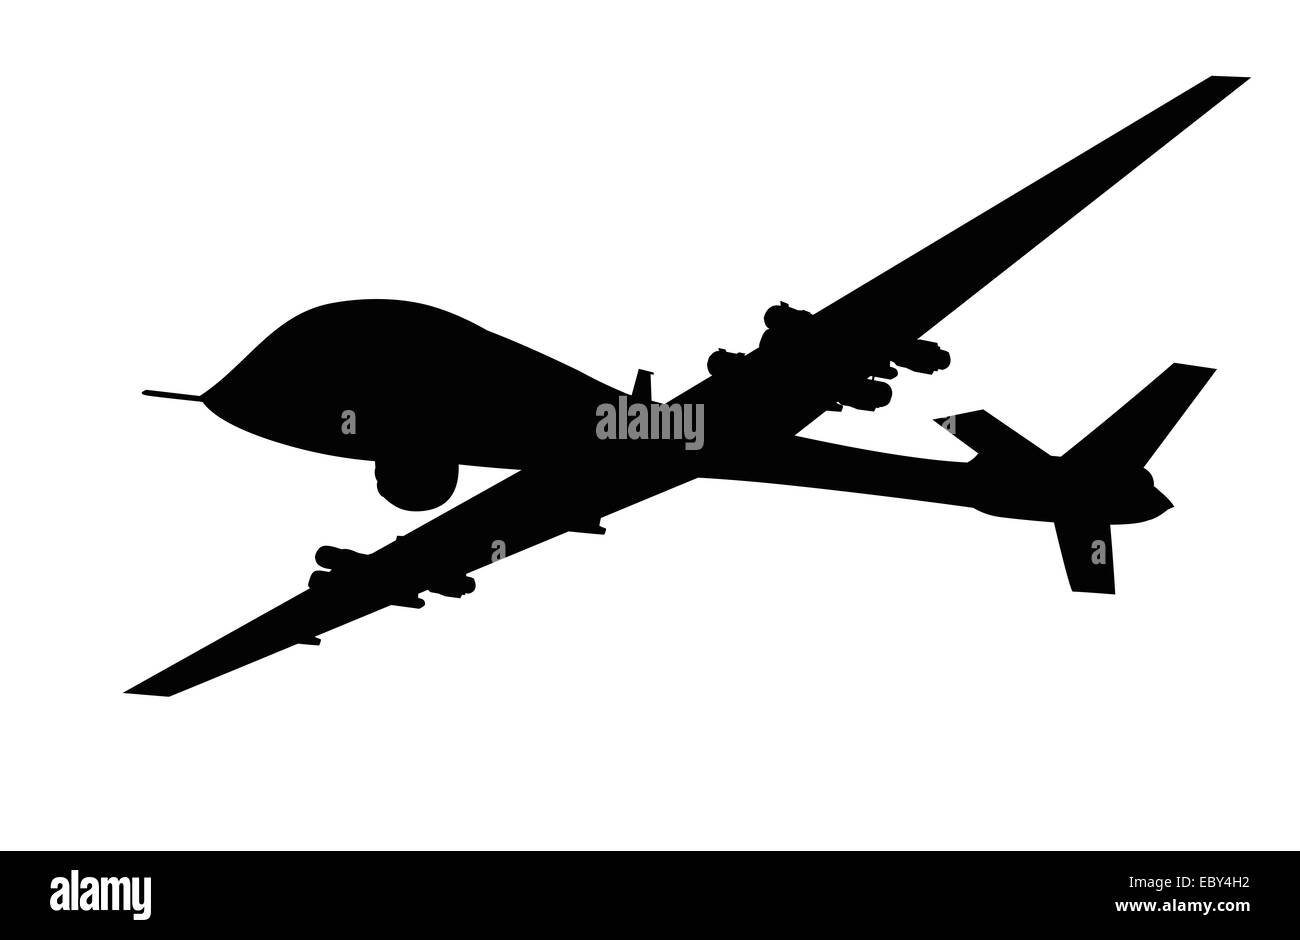 Uav drone military Banque d'images noir et blanc - Alamy